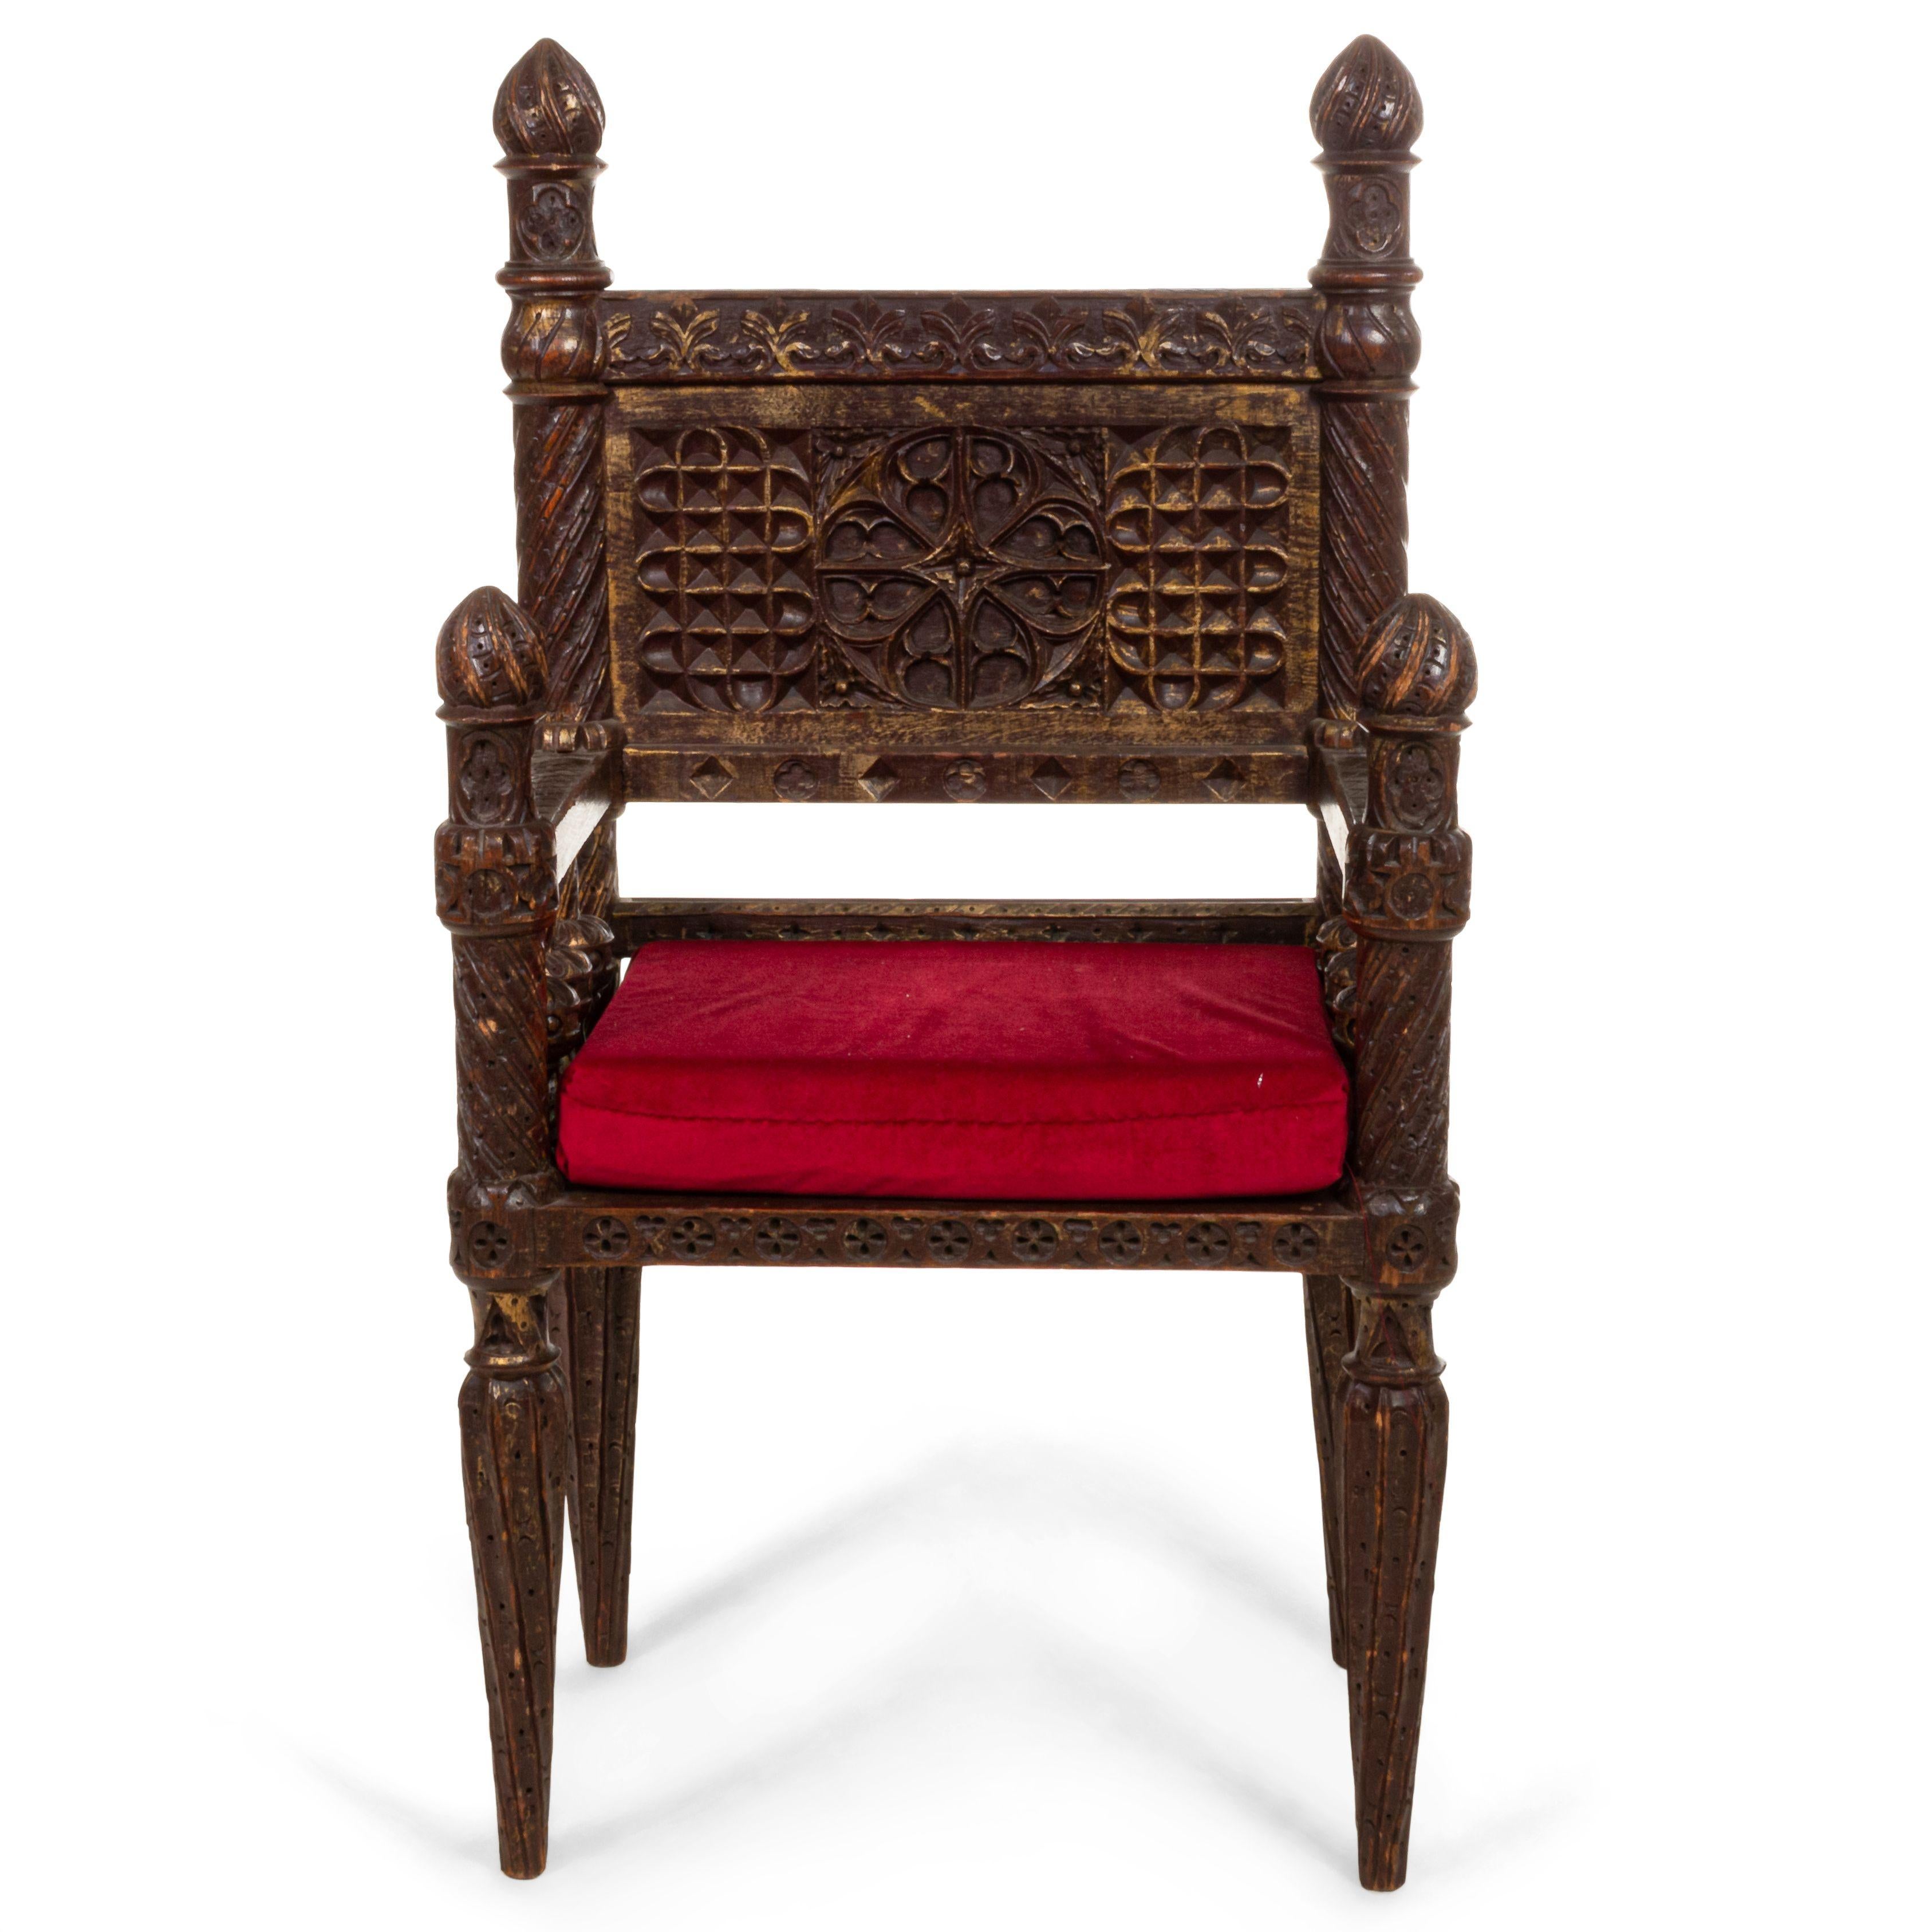 Englisch viktorianischen Gotik-Stil geschnitzt Burgunder gemalt und Gold trimmen kleinen (Thron) Sessel mit geschnitzten Medaillon in der Mitte und Finnen auf dem Rücken.